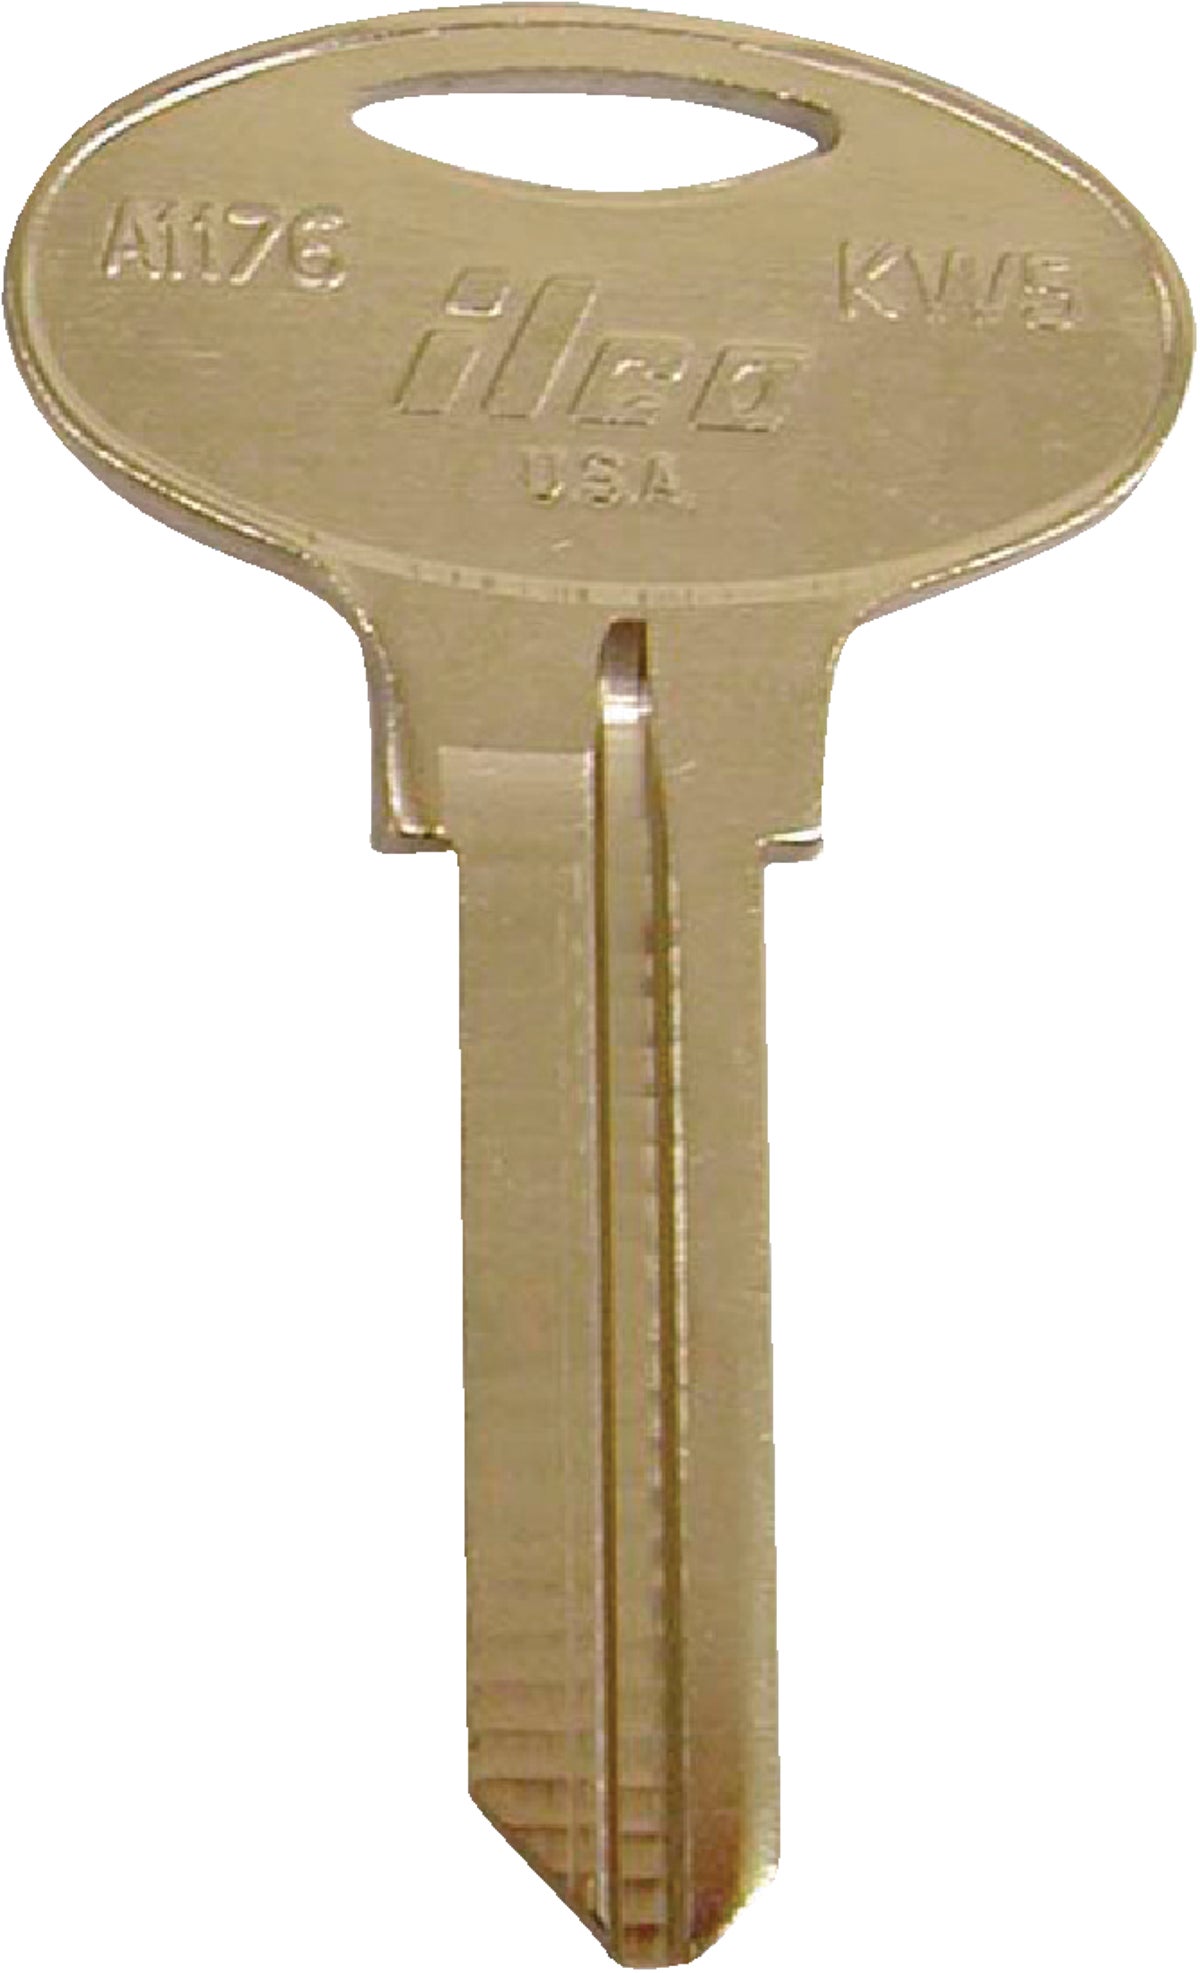 Residential Key Blanks, Kwikset Lockout Key by Cosmic Keys